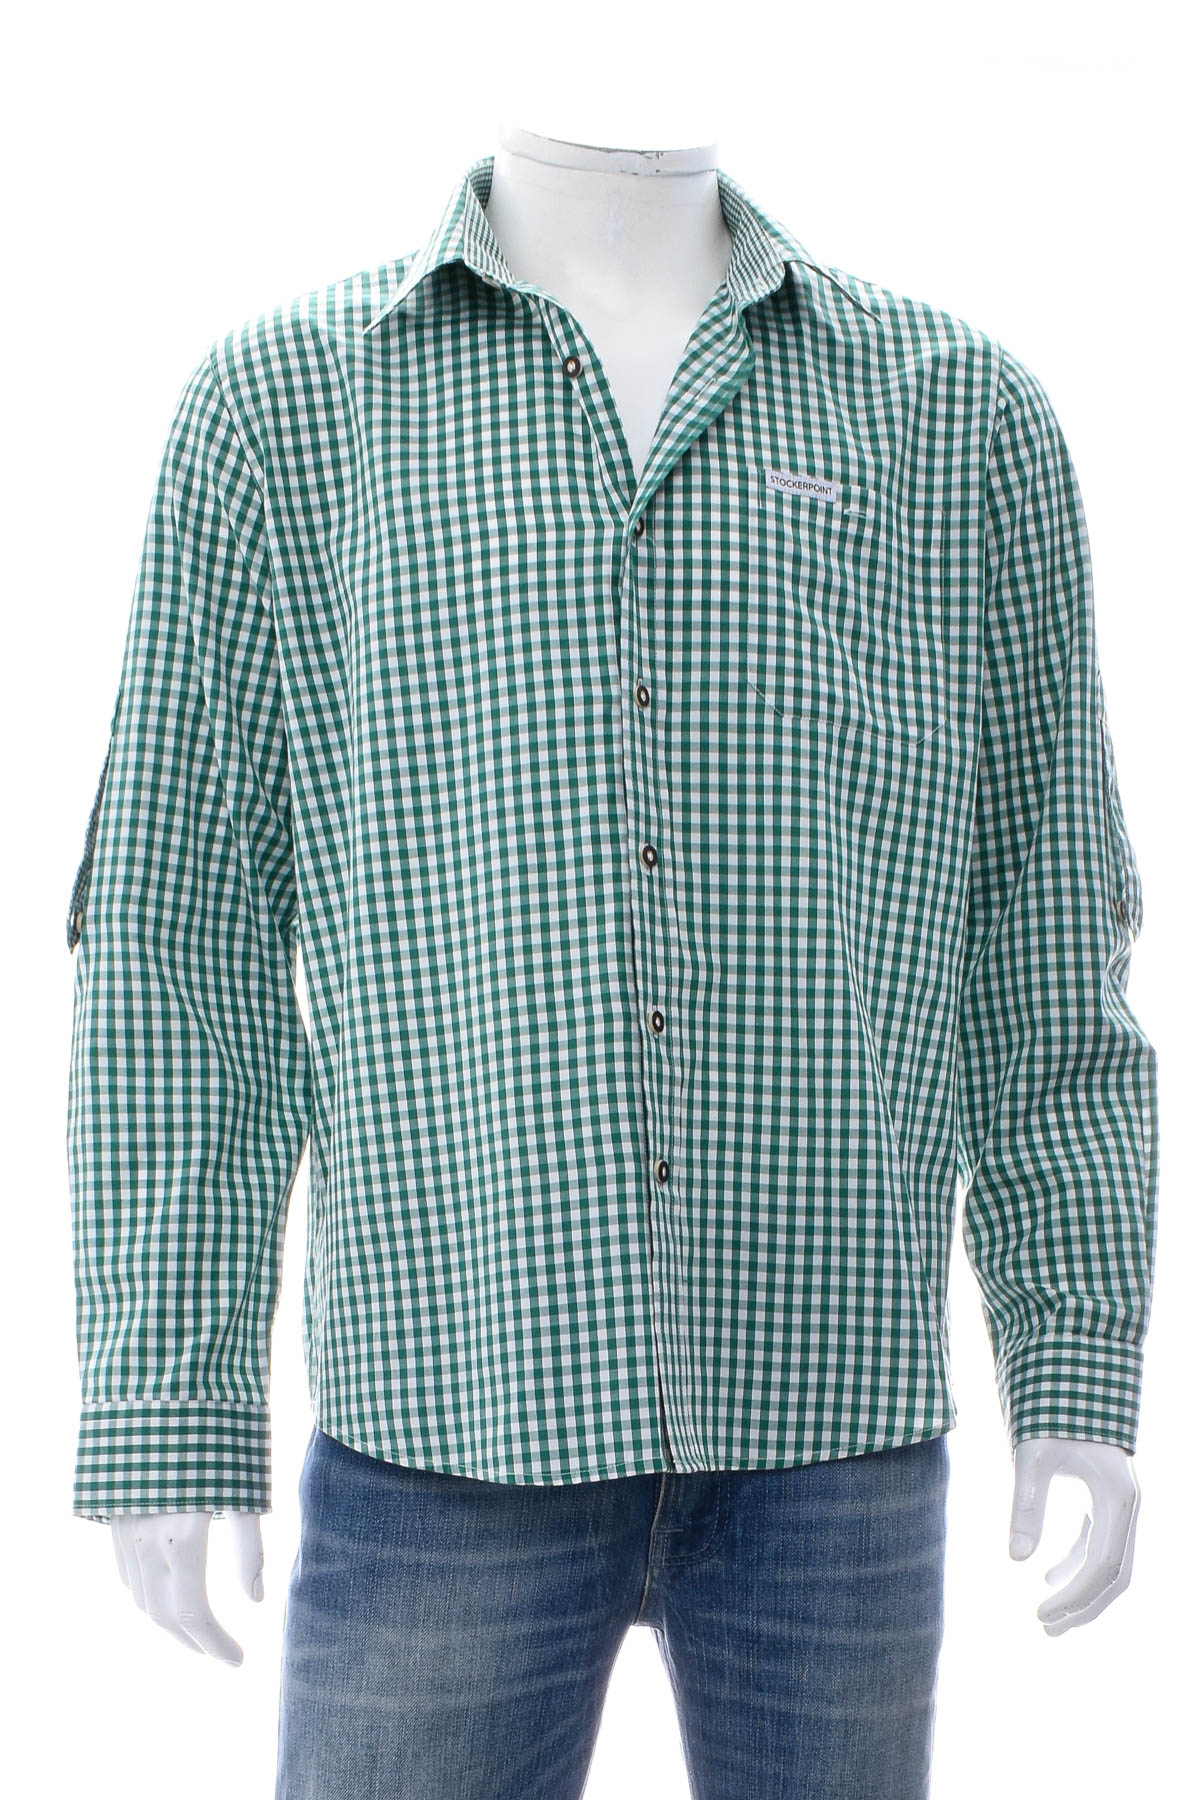 Ανδρικό πουκάμισο - STOCKERPOINT - 0